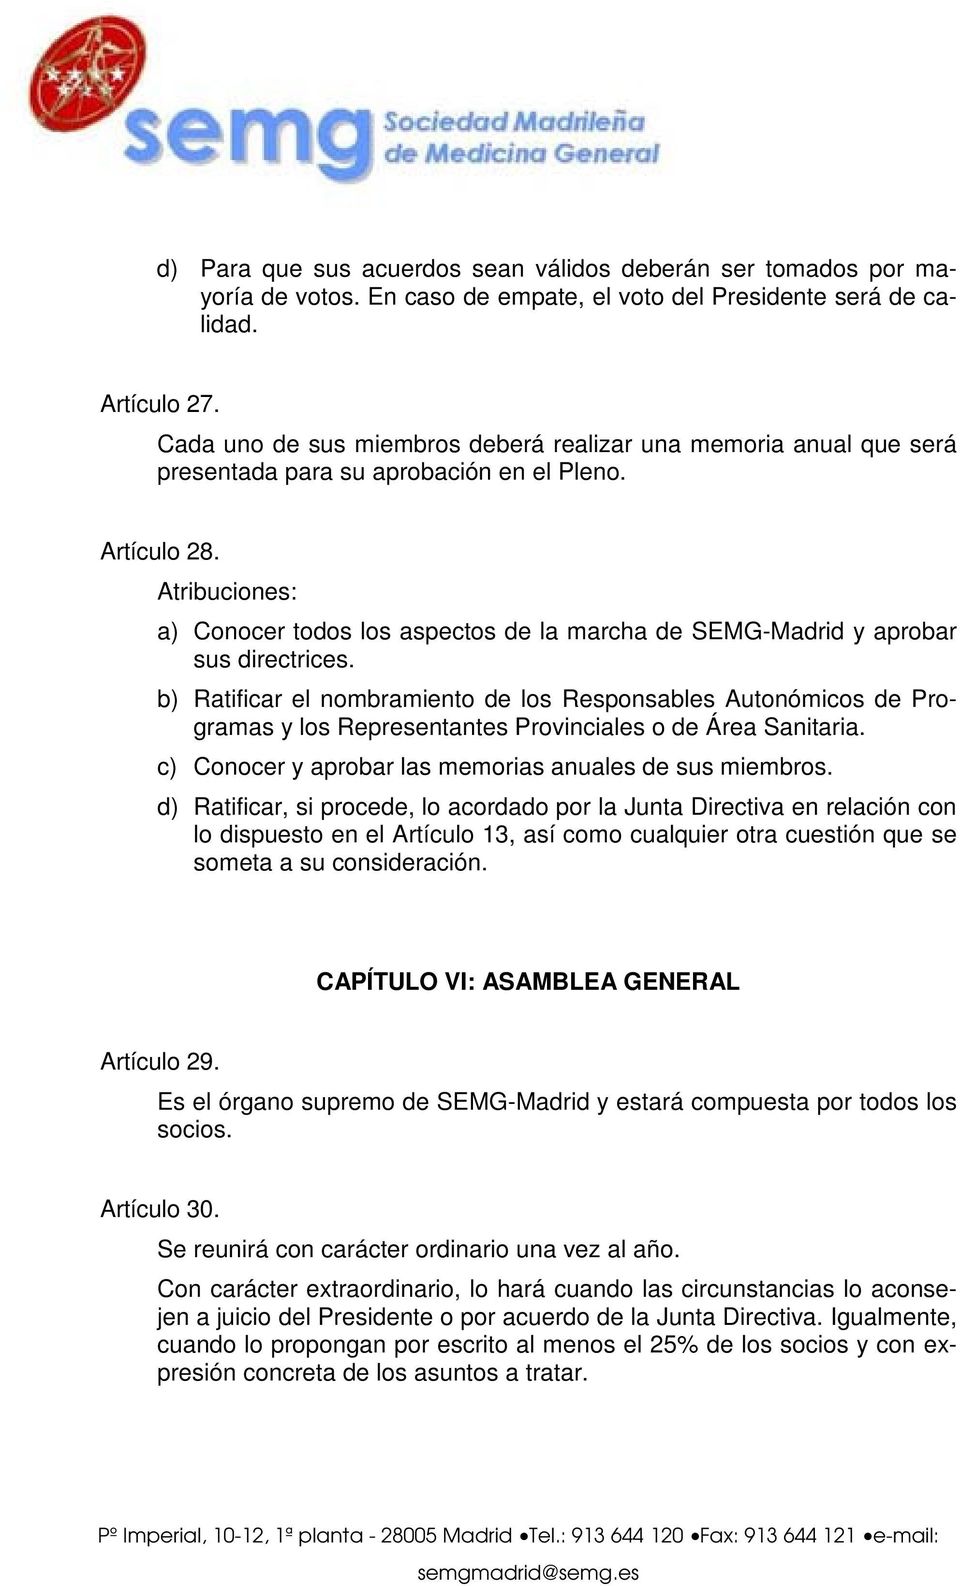 Atribuciones: a) Conocer todos los aspectos de la marcha de SEMG-Madrid y aprobar sus directrices.